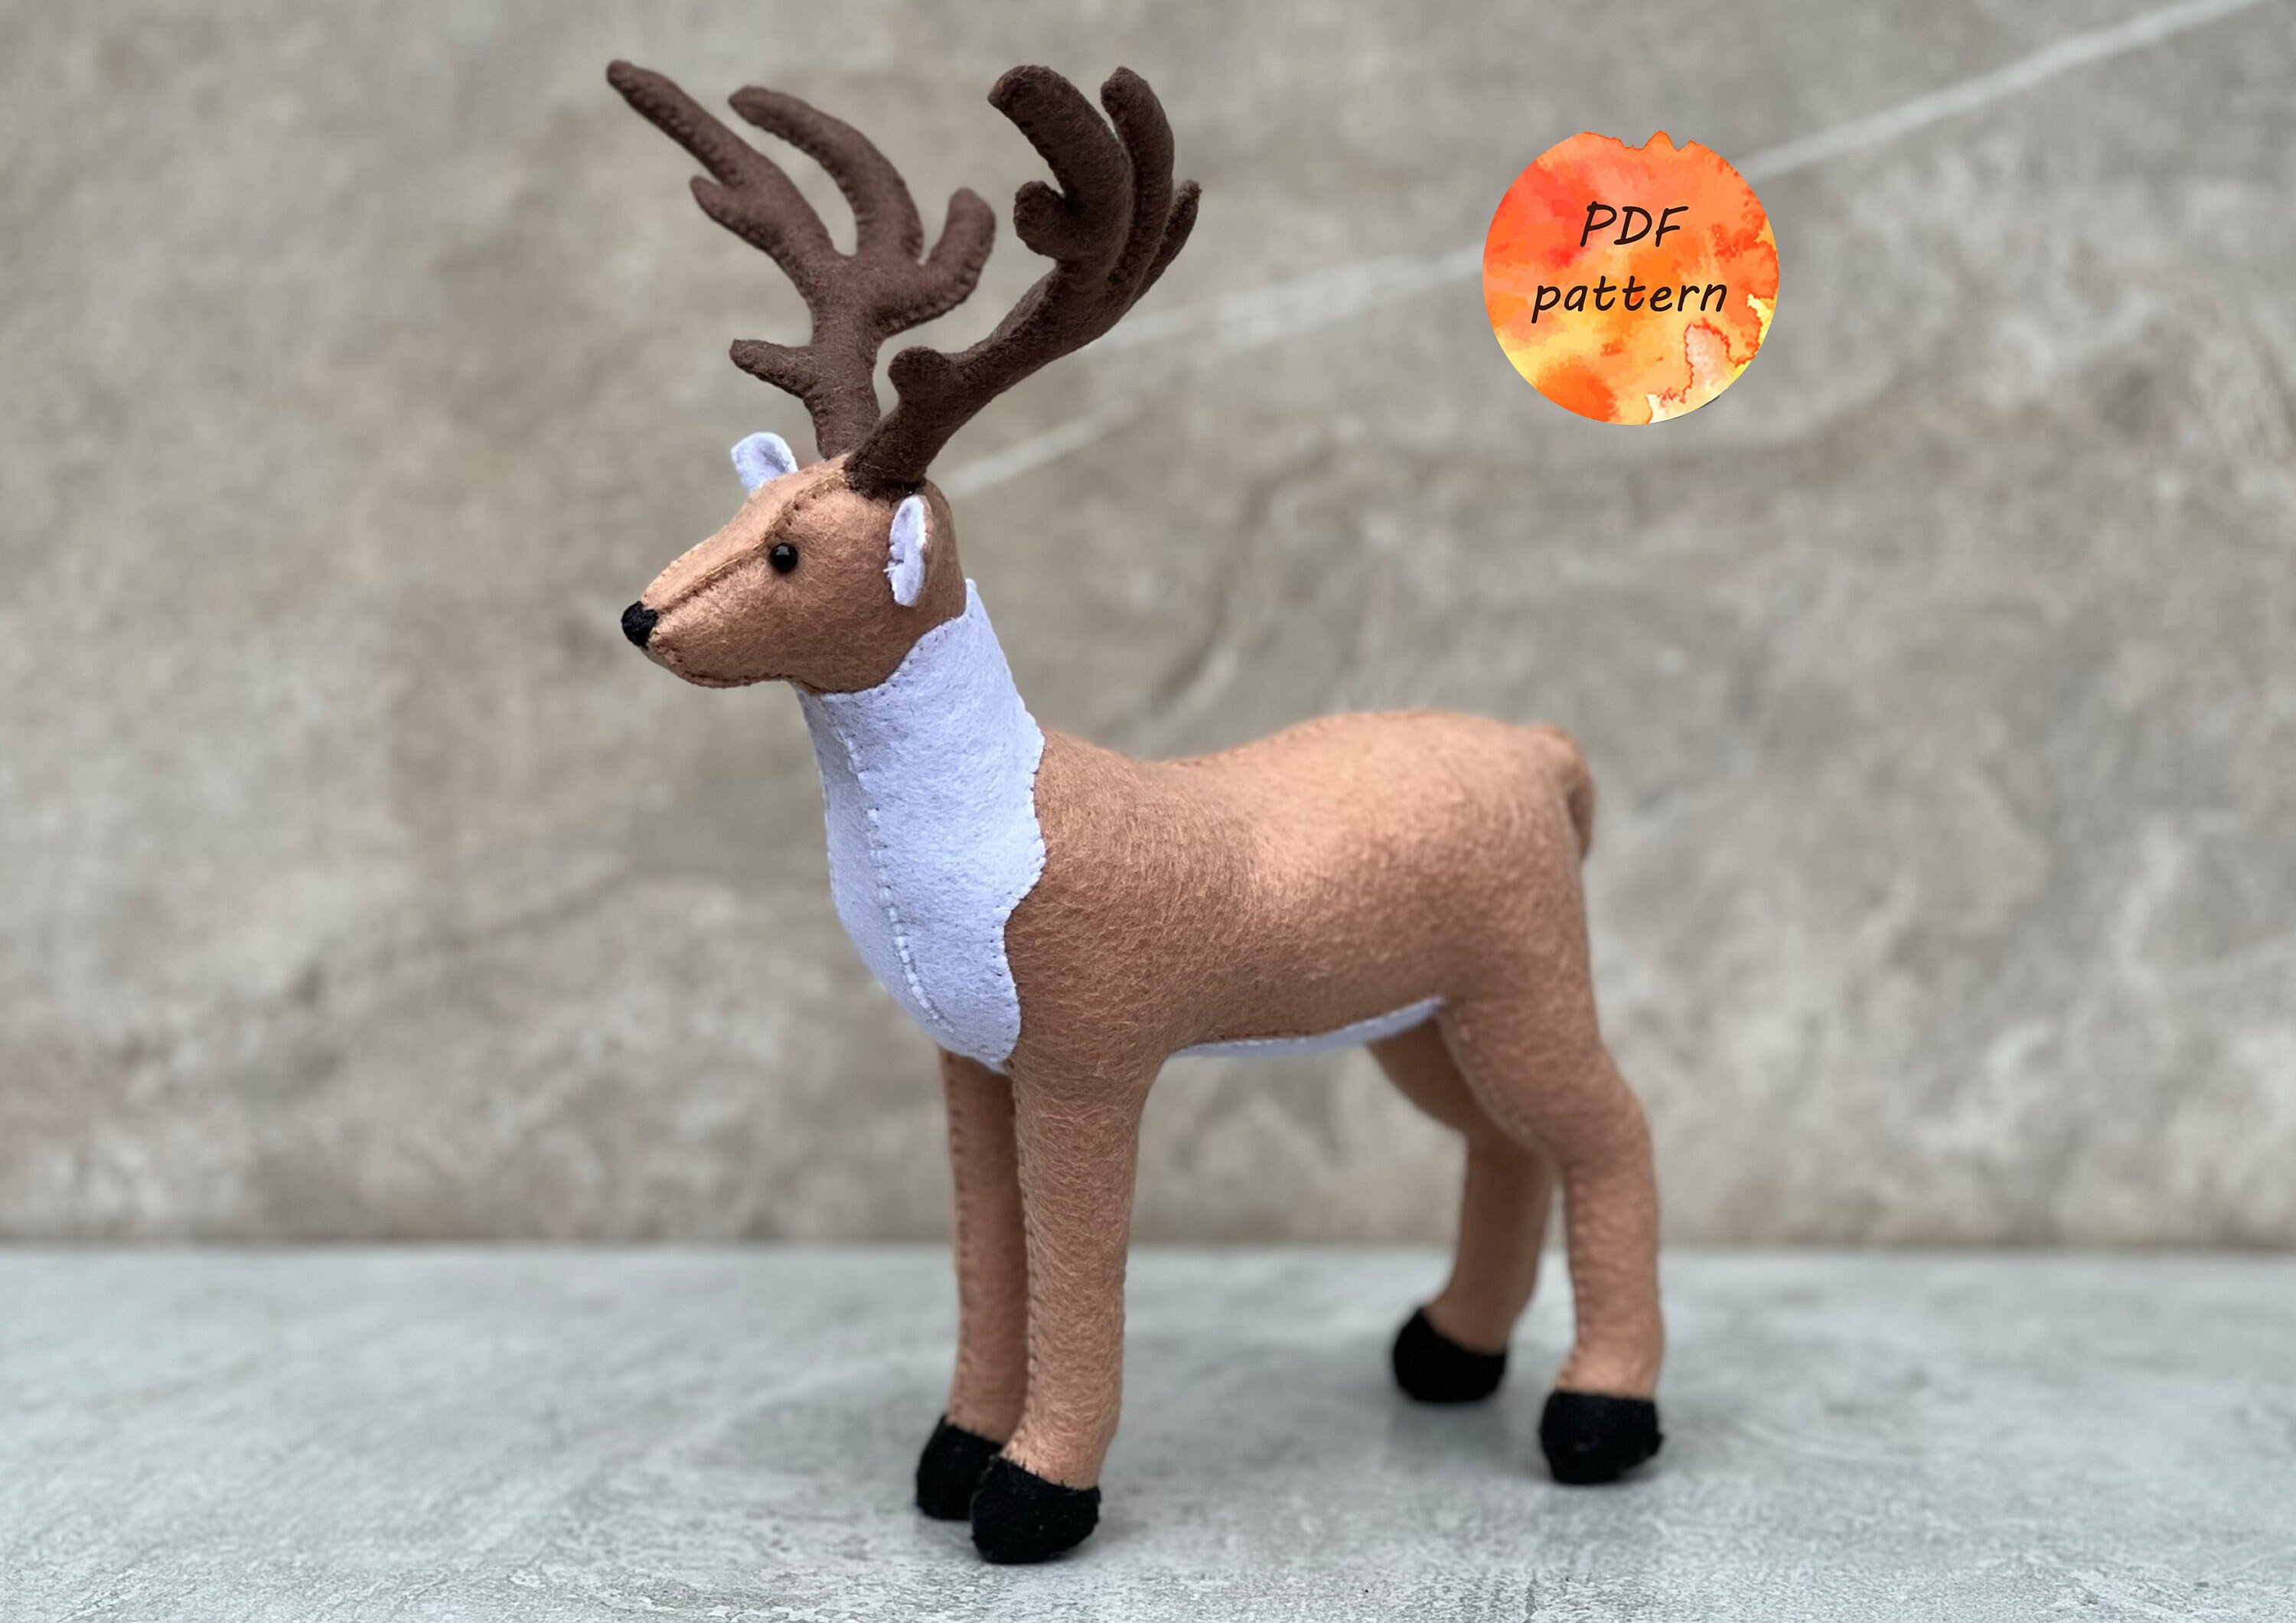 Kit Reindeer Needle Felting Kit for 2 Deer Wool DIY Felting Kit Fiber Art Felt  Animal Kit Felting Needles Included Reindeer Craft Kit 